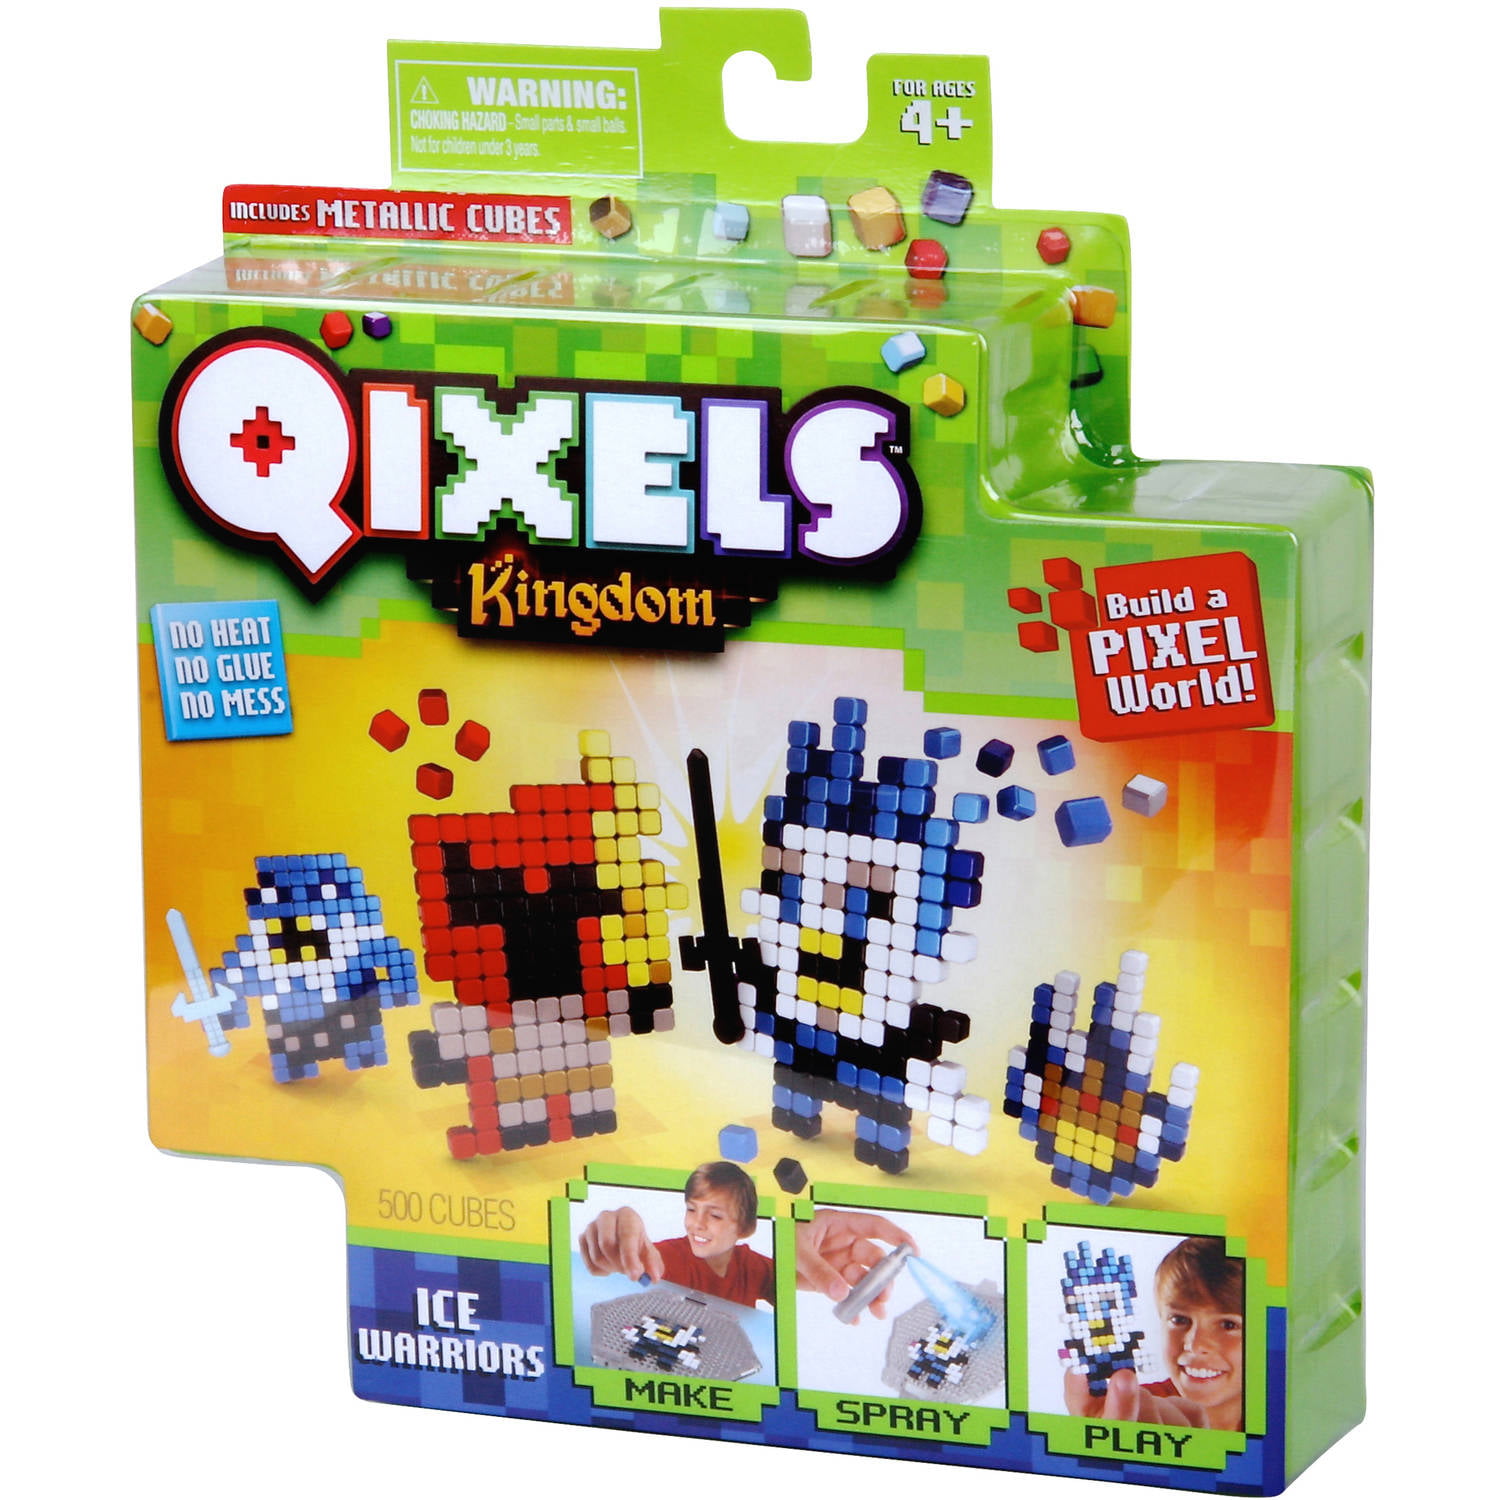 Qixels S2 Theme Pack